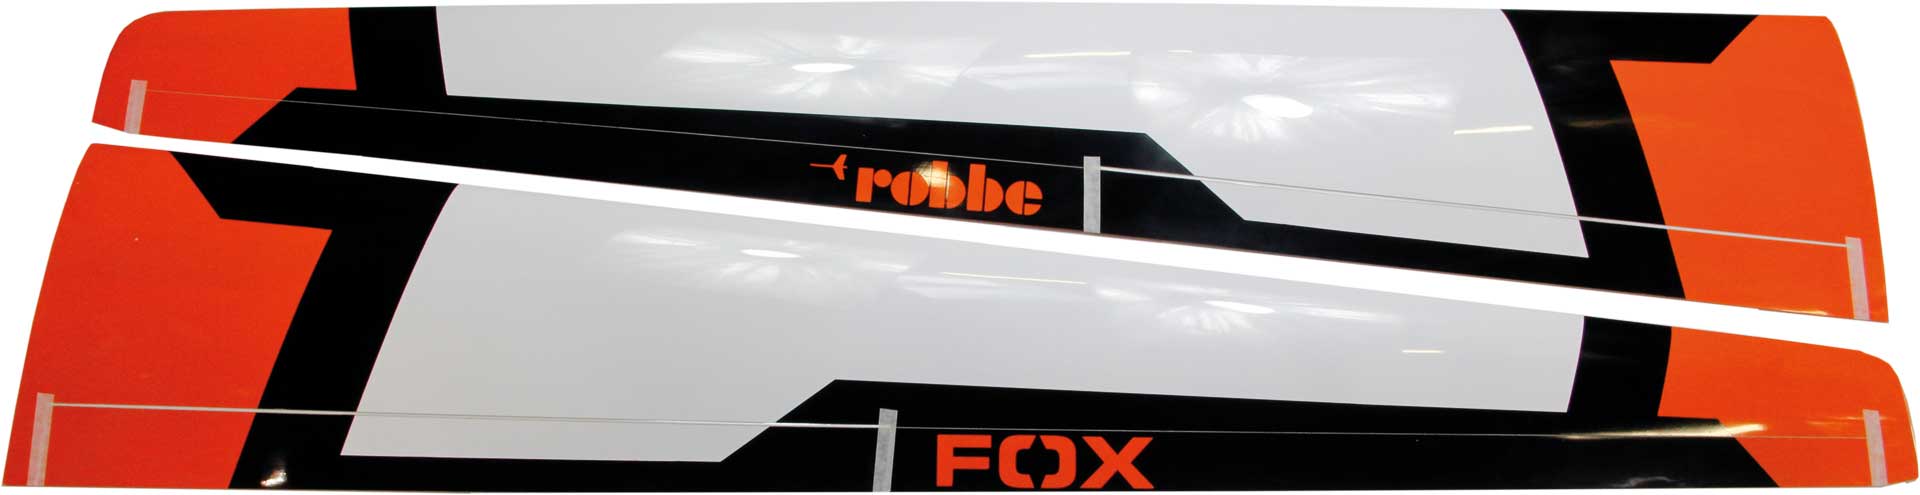 Robbe Modellsport FLÄCHENSATZ MDM-1 FOX 3,5M ARF LACKIERT ORANGE OHNE SERVOS